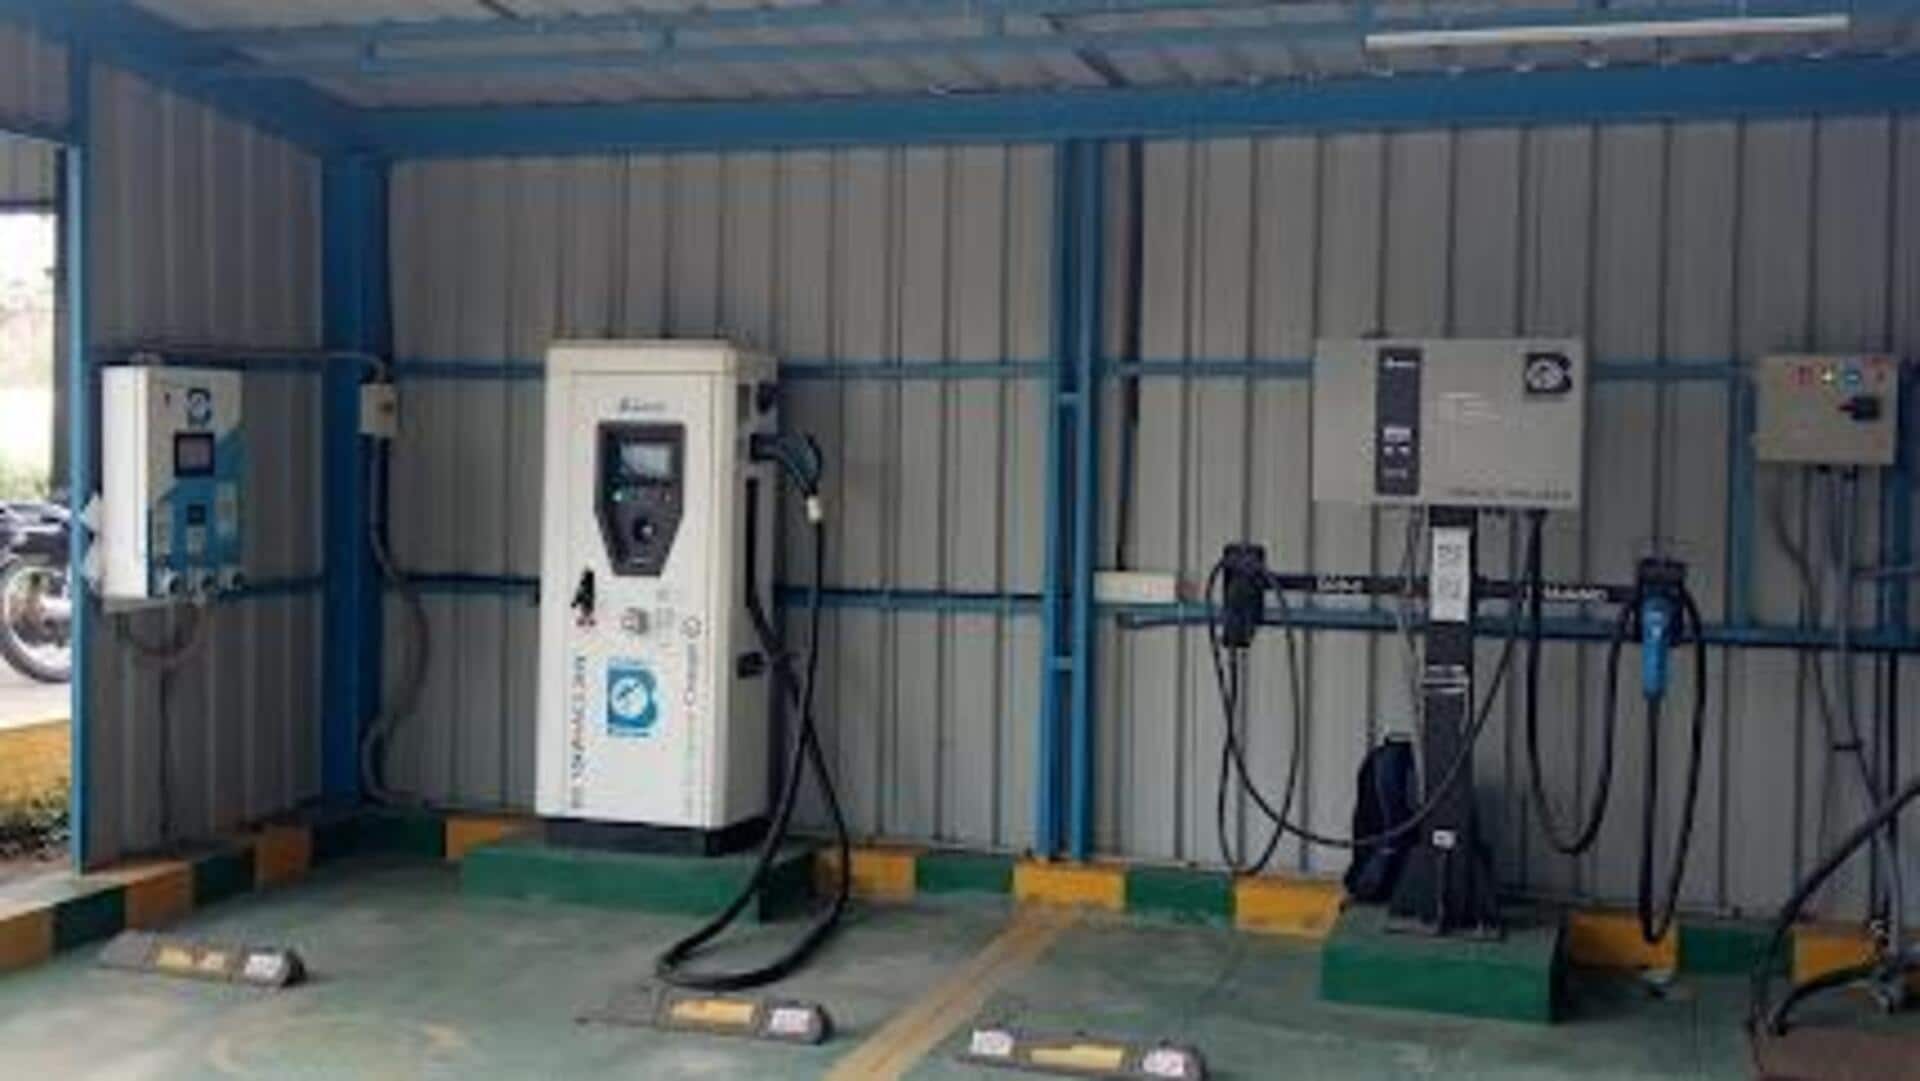 बेंगलुरू-पुणे हाईवे के टोल प्लाजा पर लगेंगे EV फास्ट चार्जिंग स्टेशन, सौंपा गया प्रस्ताव 